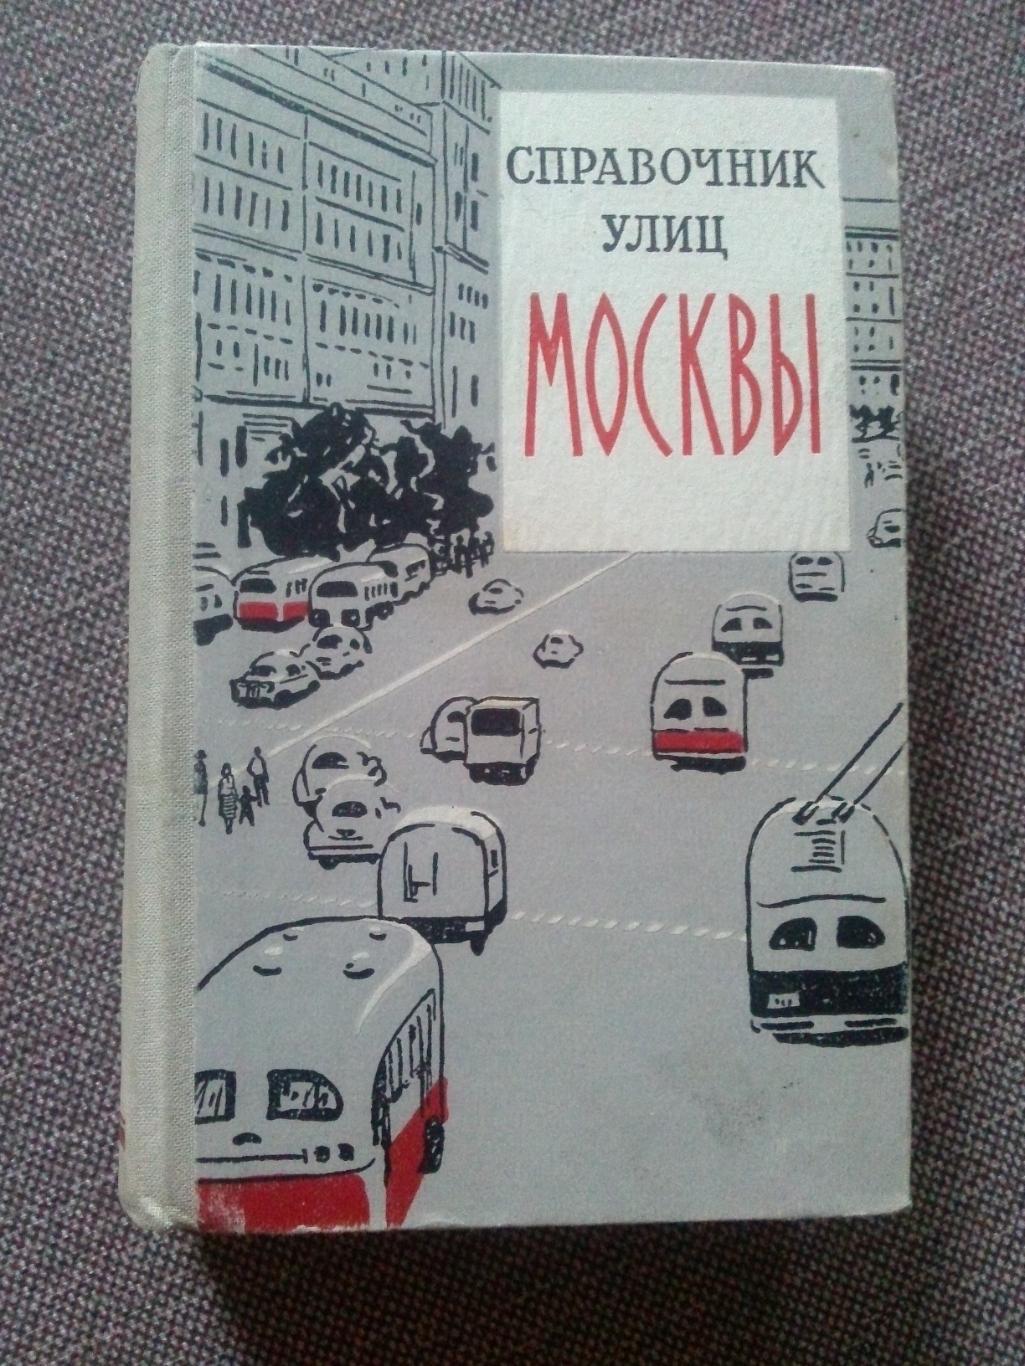 Справочник улиц Москвы 1959 г. ( Архитектура ) редкое издание